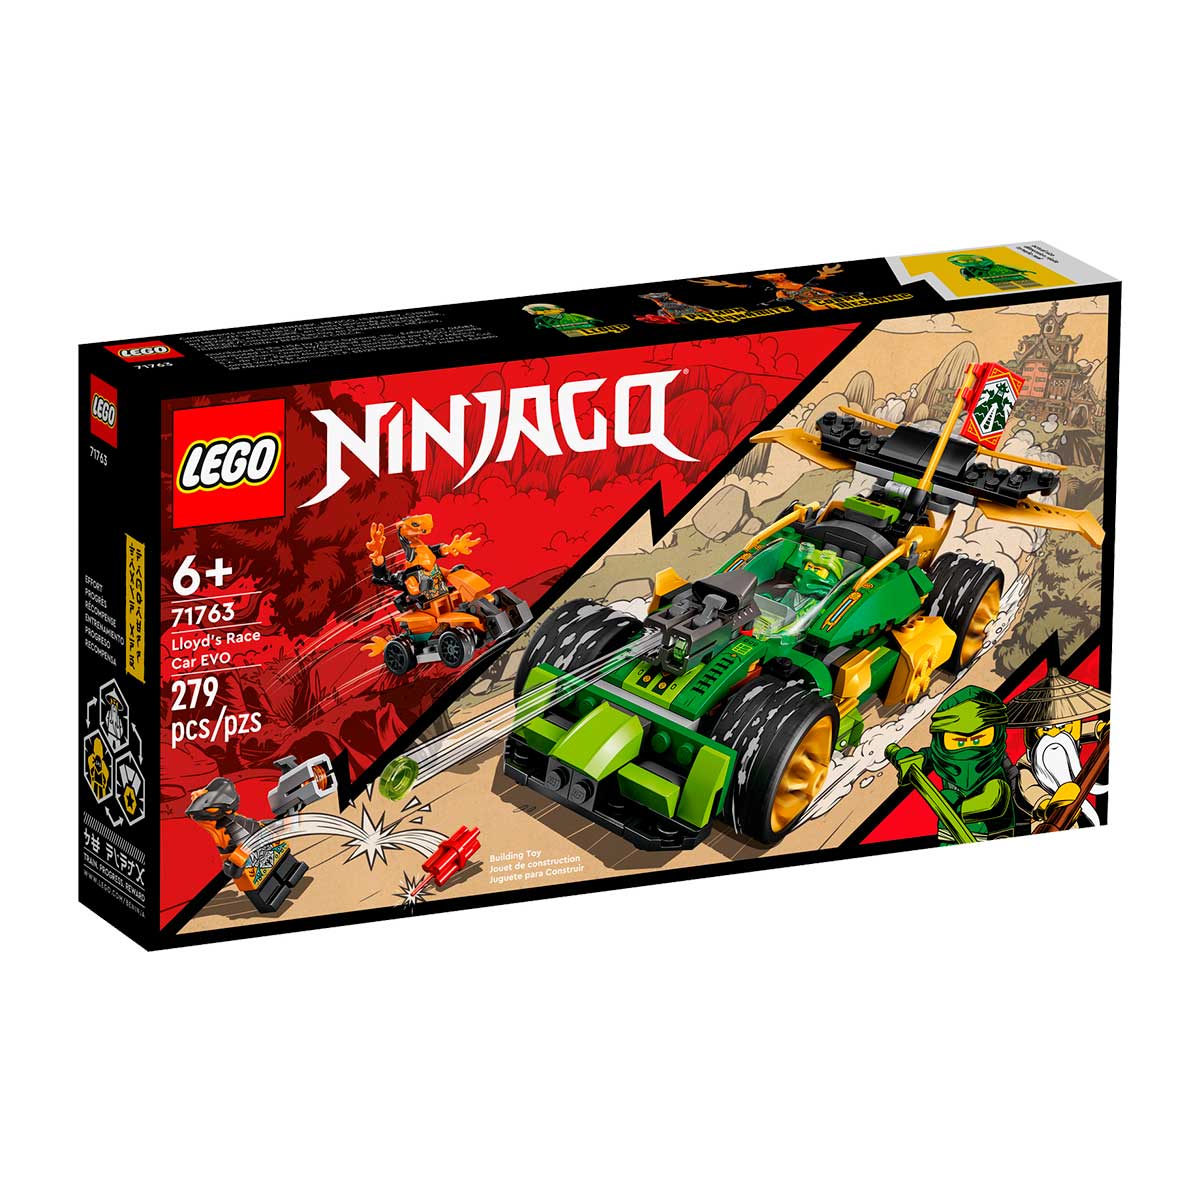 LEGO Ninjago - Carro de Corrida EVO do Lloyd - 71763